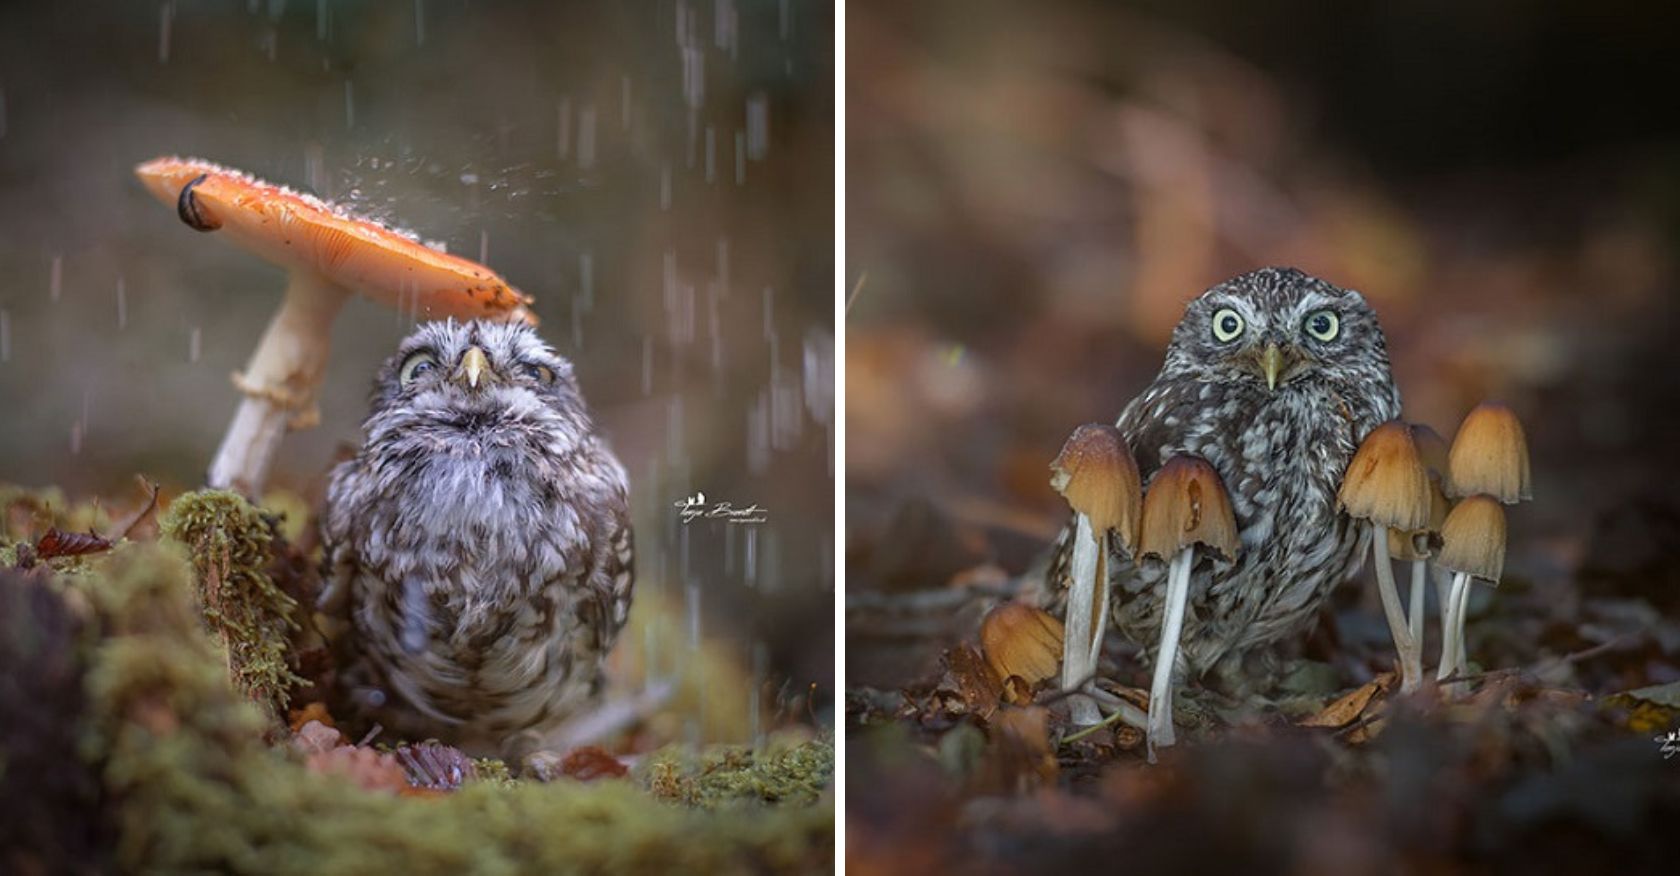 Tiny Pet Owl Finds Shelter Under Mushroom During Rainstorm